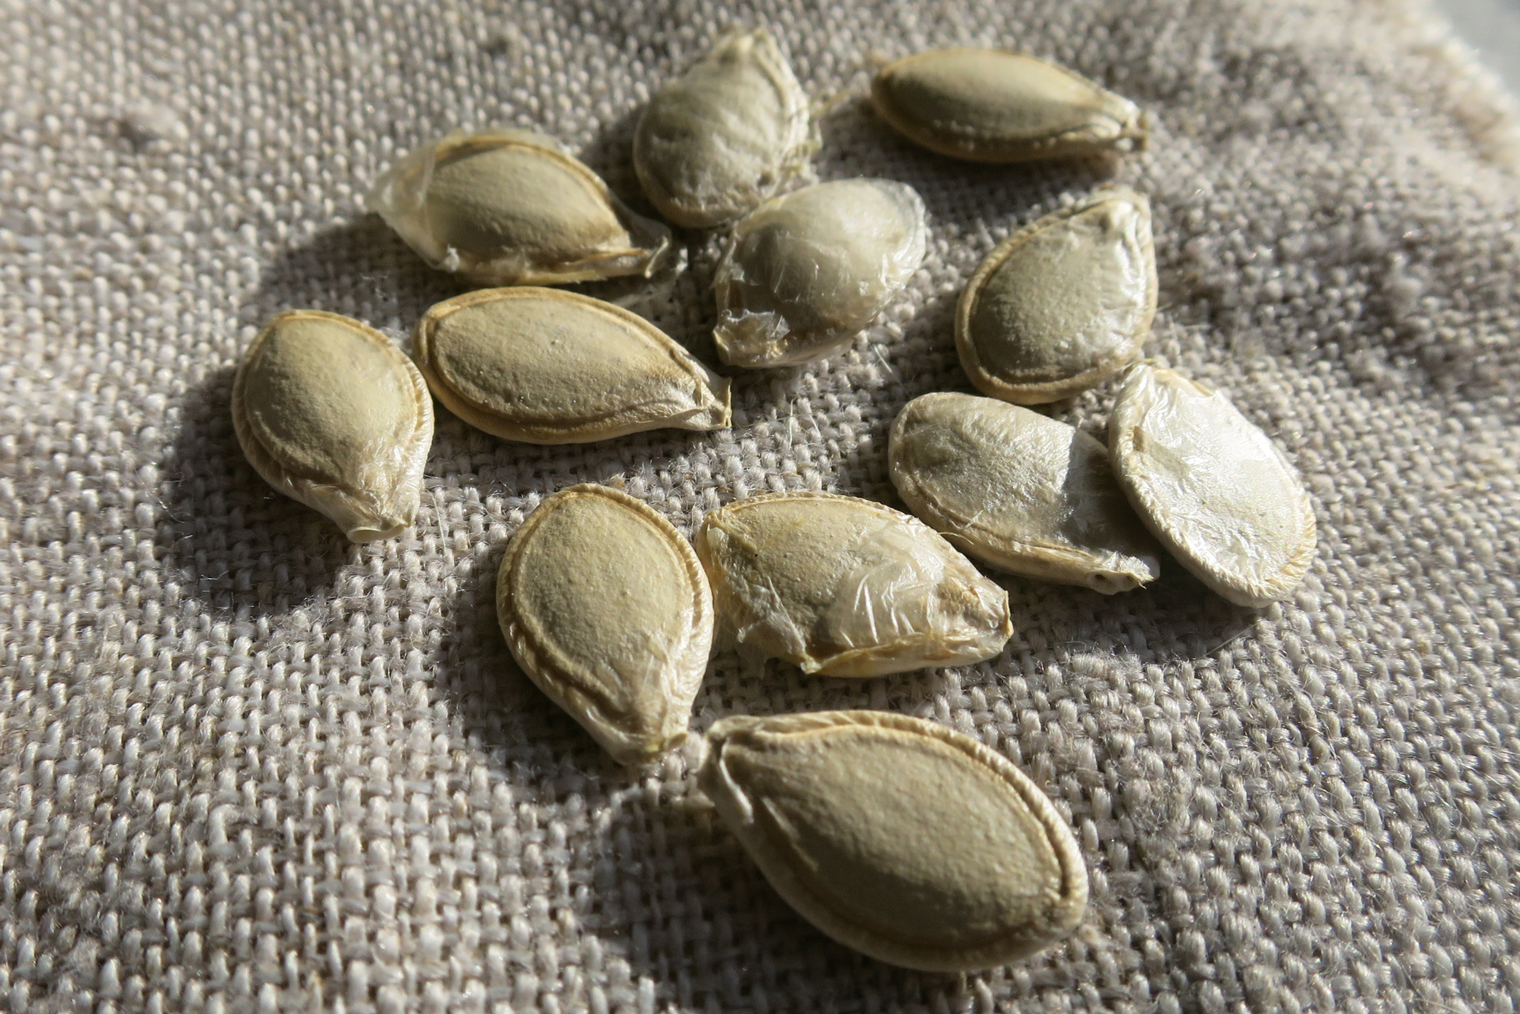 Семена у тыквы очень крупные, их легко и удобно сеять